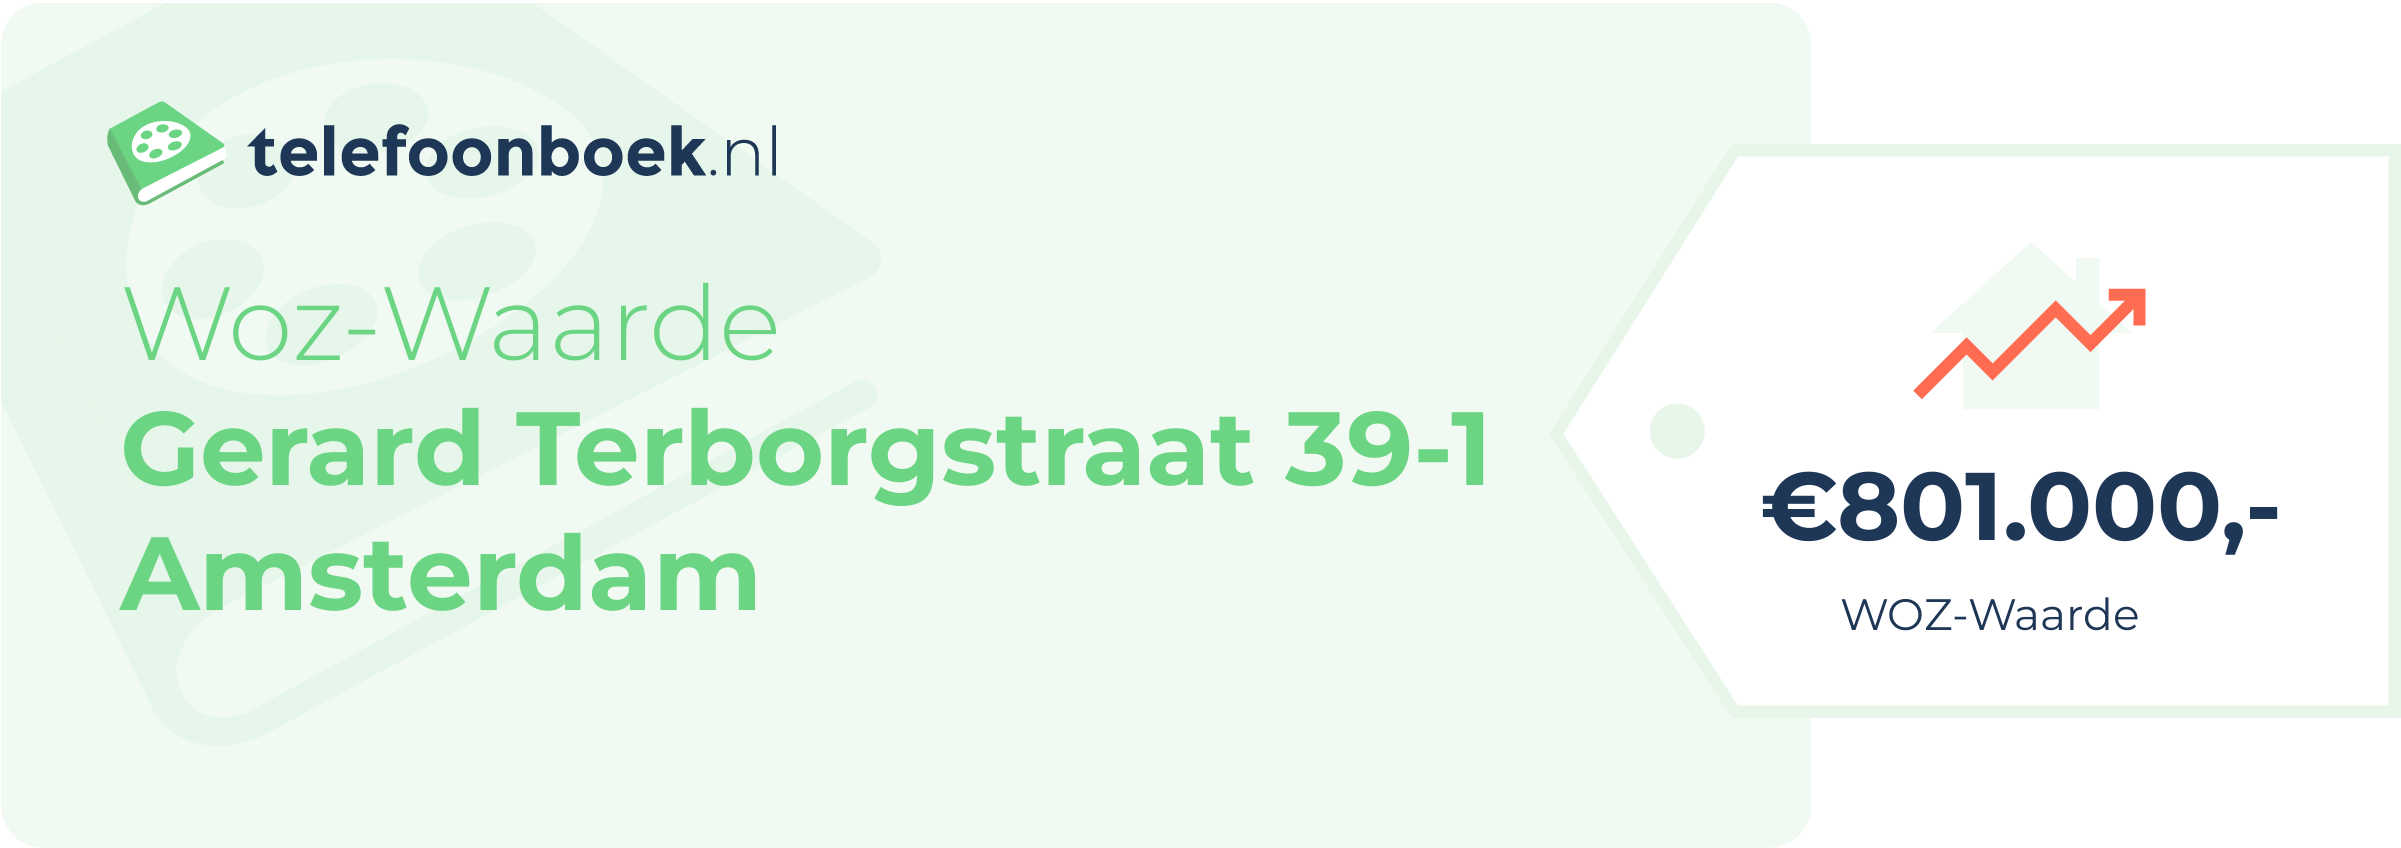 WOZ-waarde Gerard Terborgstraat 39-1 Amsterdam